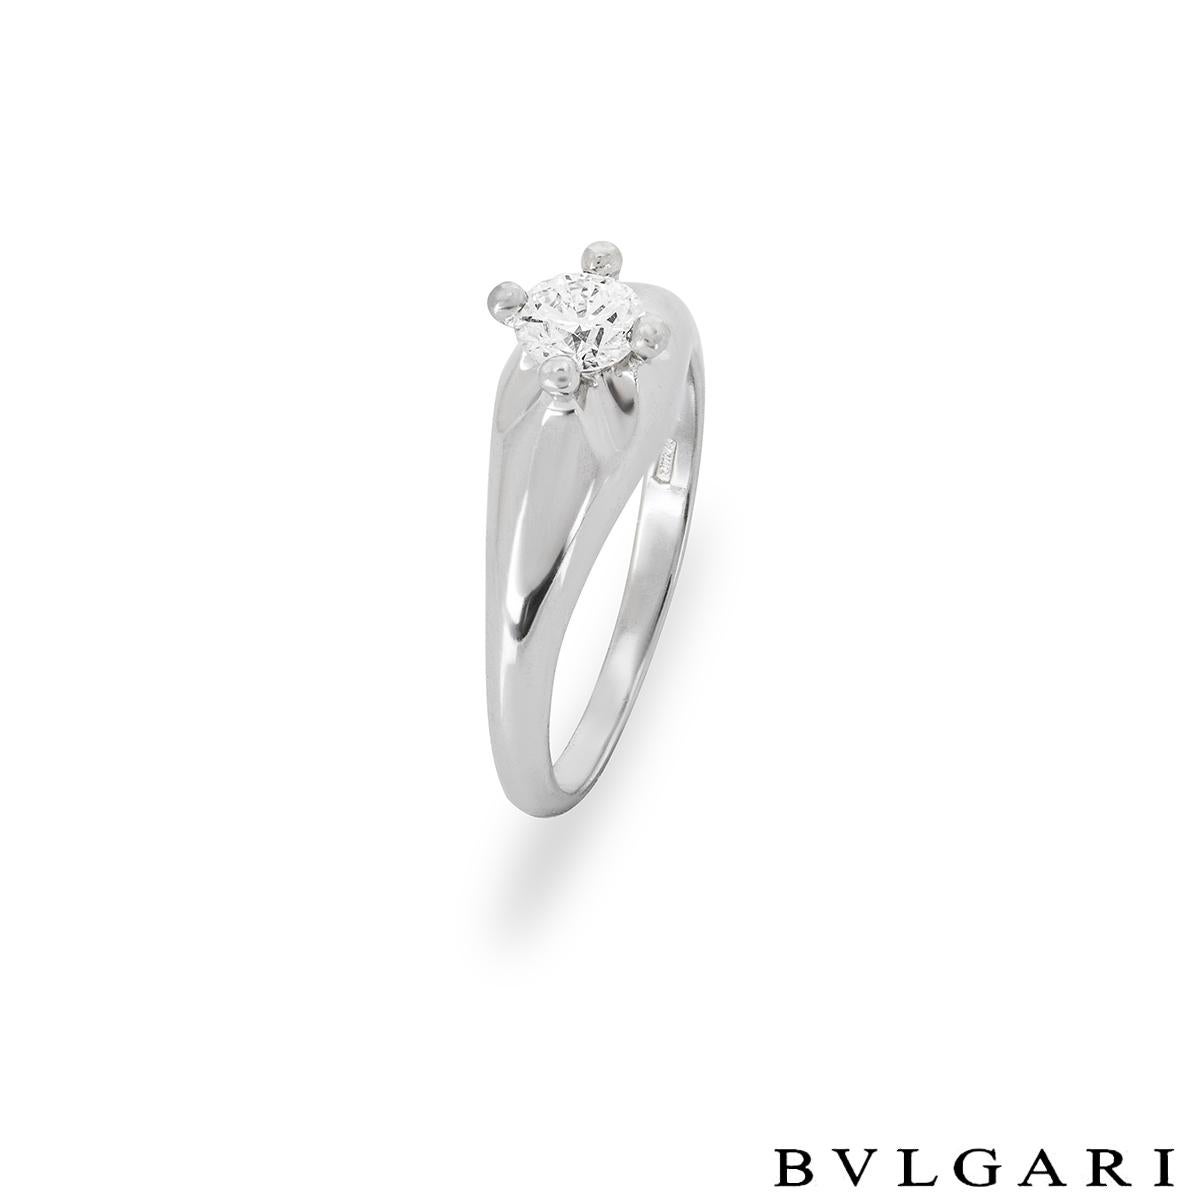 Ein atemberaubender Platin-Diamantring von Bvlgari aus der Kollektion Corona. Der Ring ist in der Mitte mit einem runden Diamanten im Brillantschliff mit einem Gewicht von 0,33 ct, Farbe D und Reinheit VVS2 in einer erhöhten Fassung mit vier Klauen